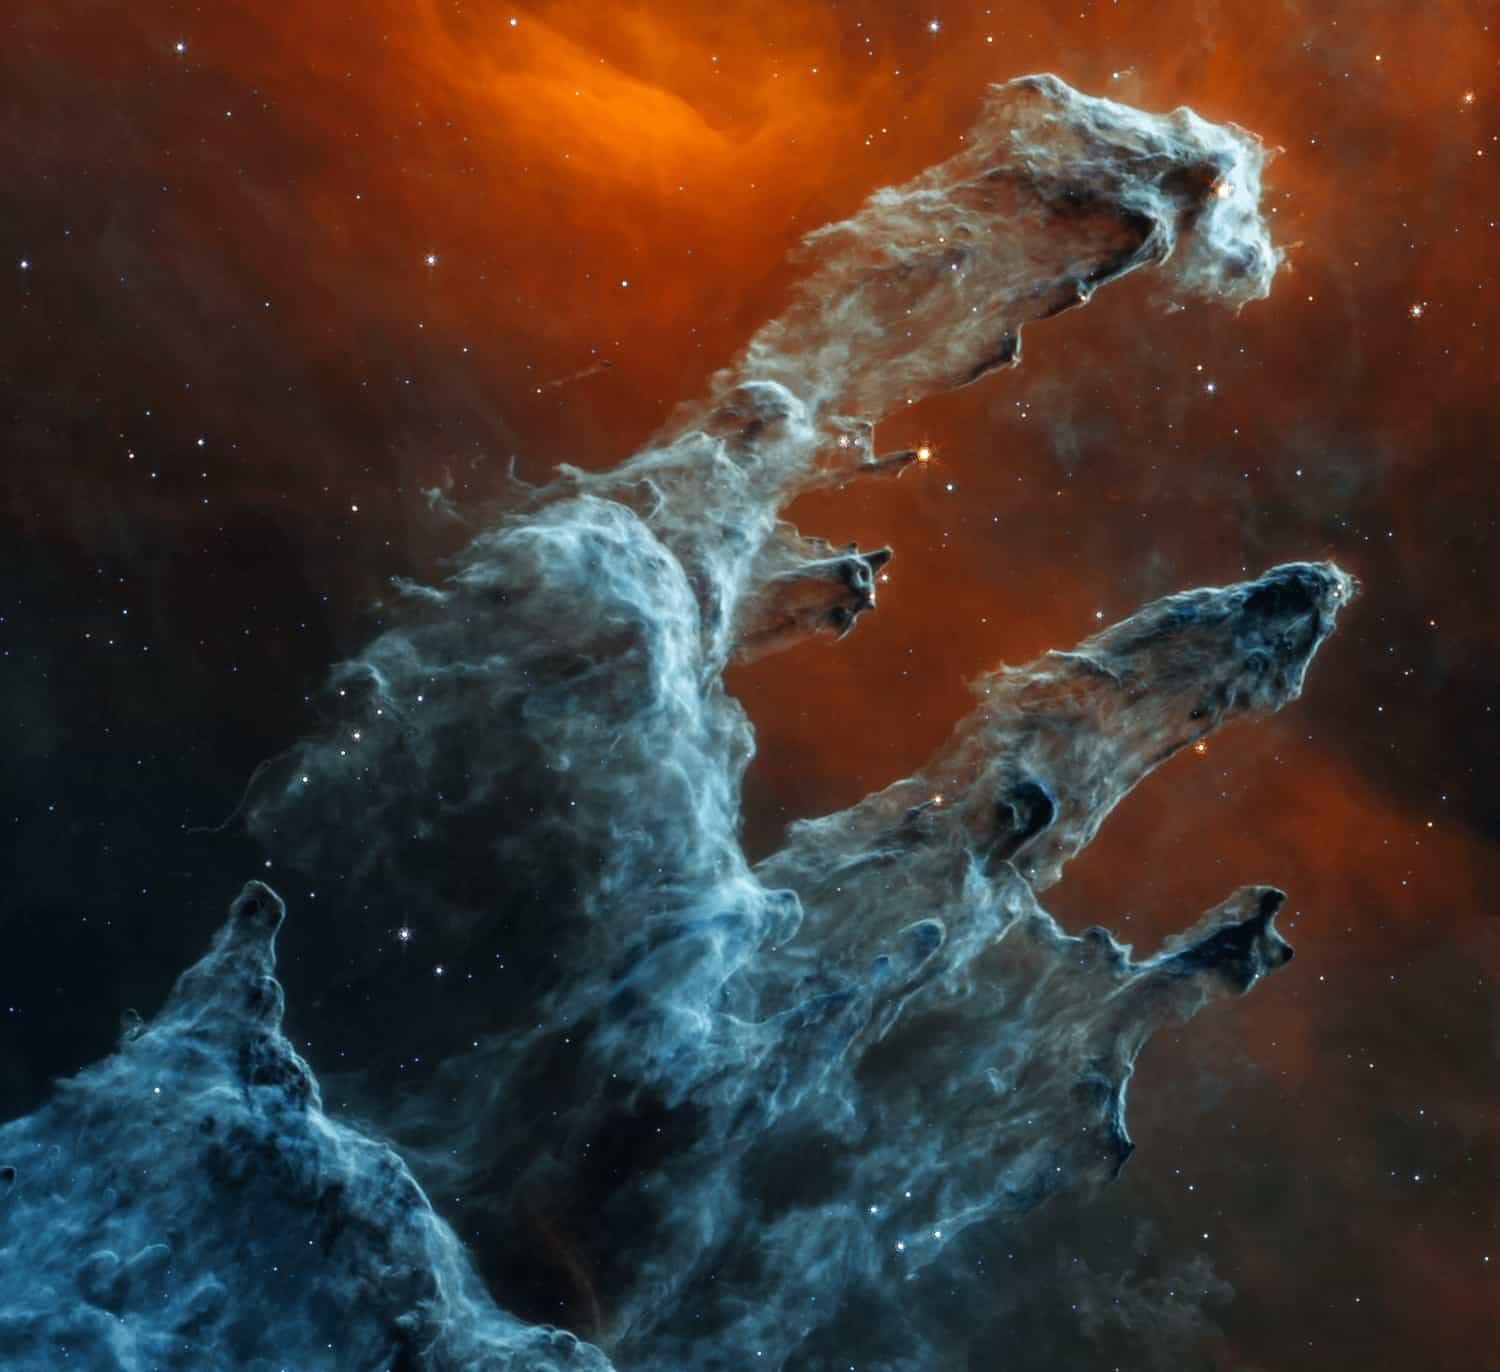 ジェイムズ・ウェッブ宇宙望遠鏡による「創造の柱」の新たな不気味な画像が公開